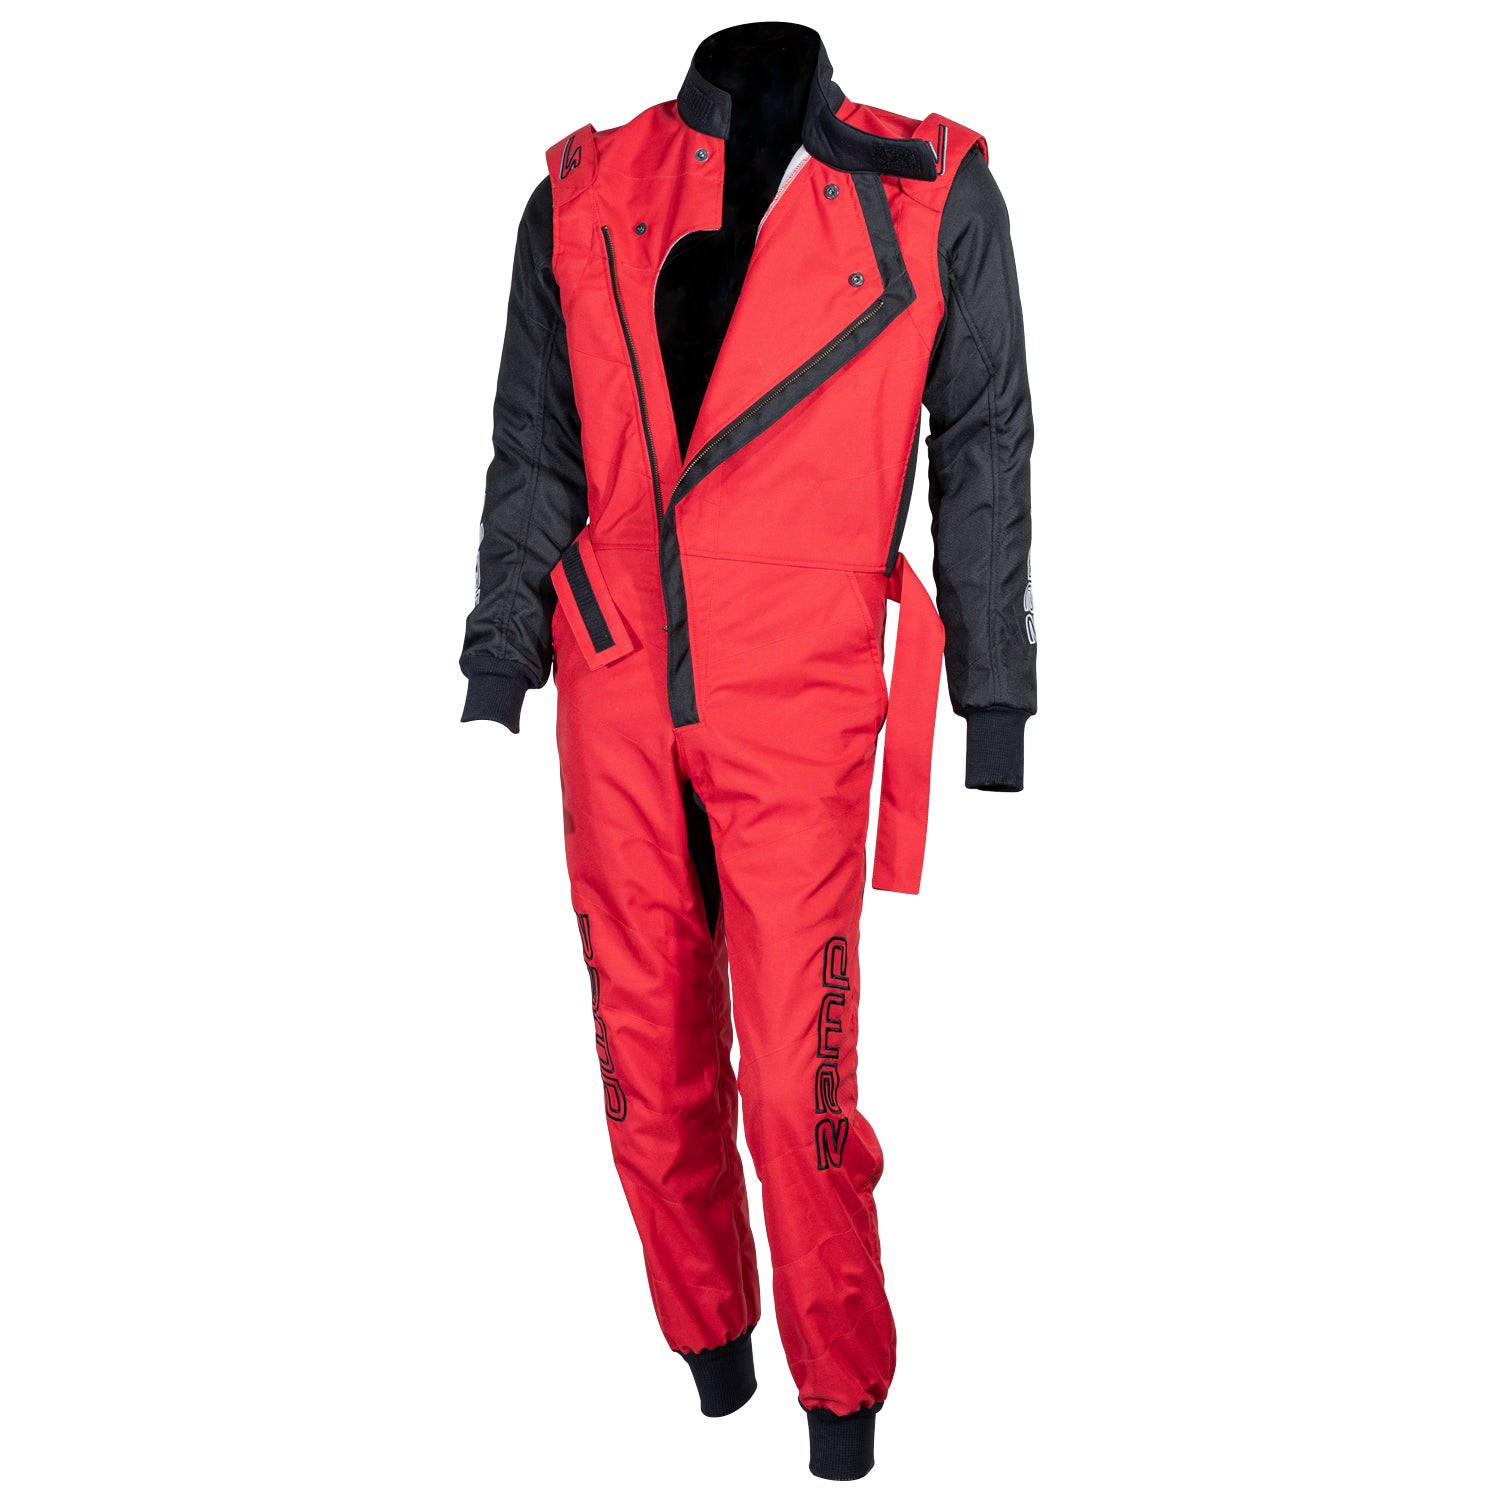 Zamp ZK-40 KART Race Suit, 3 color options